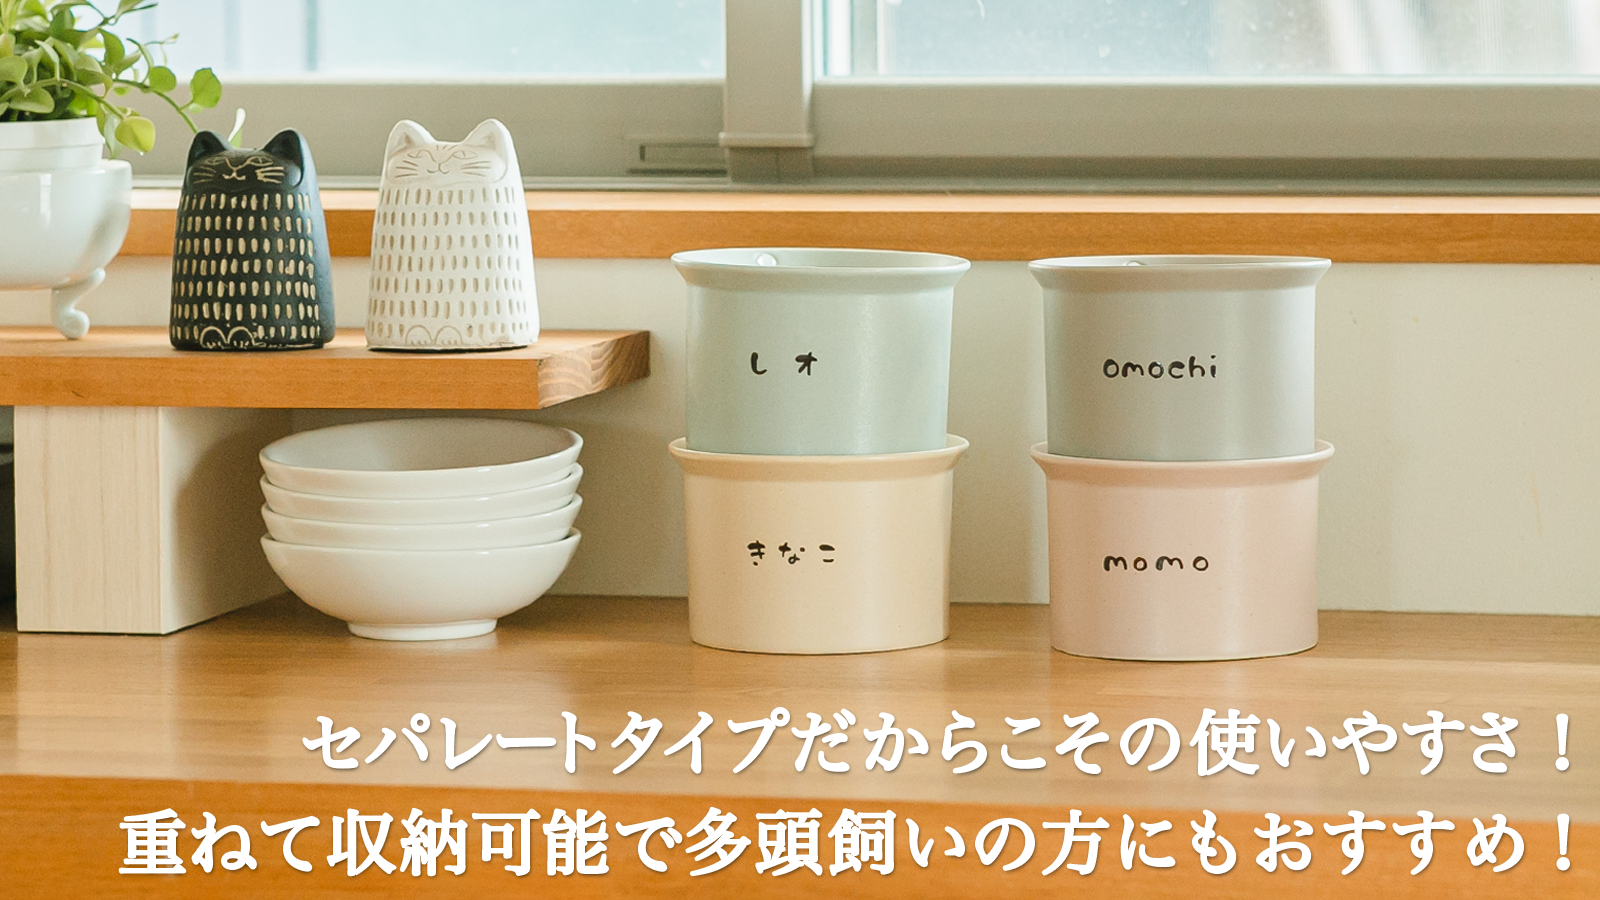 キッチンカウンターに並んだねこ茶碗の画像。左端には黒と白の猫の置物が置かれ、その下には白い積み重ねたねこ茶碗がある。中央には「レオ」と名入れされた水色の台座とその下には「きなこ」と名入れされたベージュの台座、右端には「omochi」と名入れされたグレーのねこ茶碗とその下には「momo」と名入れされたピンクの台座がある。画像の下部には「セパレートタイプだからこその使いやすさ！重ねて収納可能で多頭飼いの方にもおすすめ！」というテキストが添えられている。